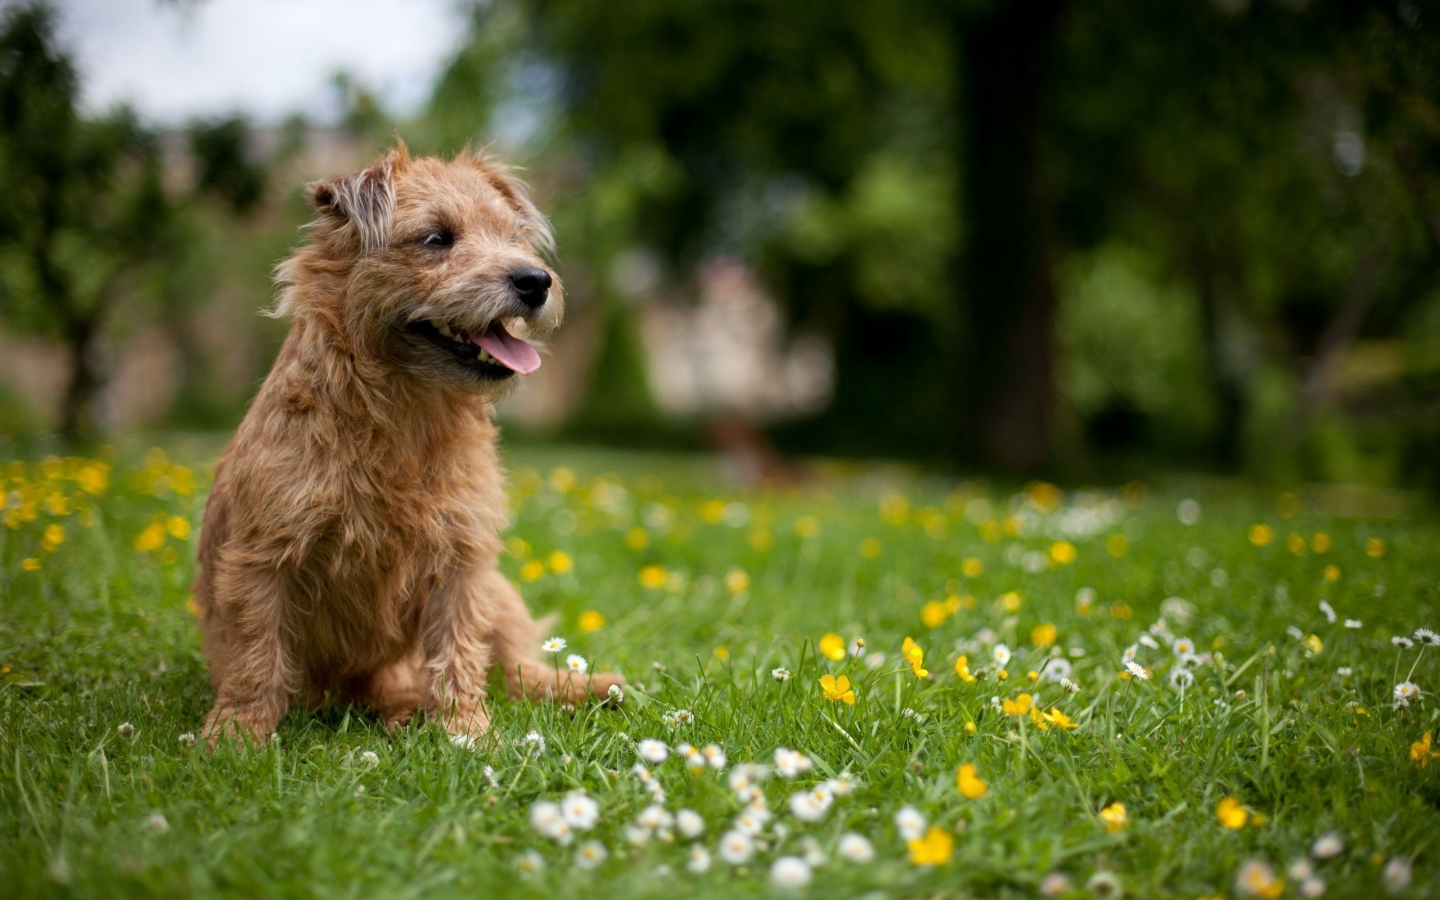 Glen of Imaal Terrier for 1440 x 900 widescreen resolution